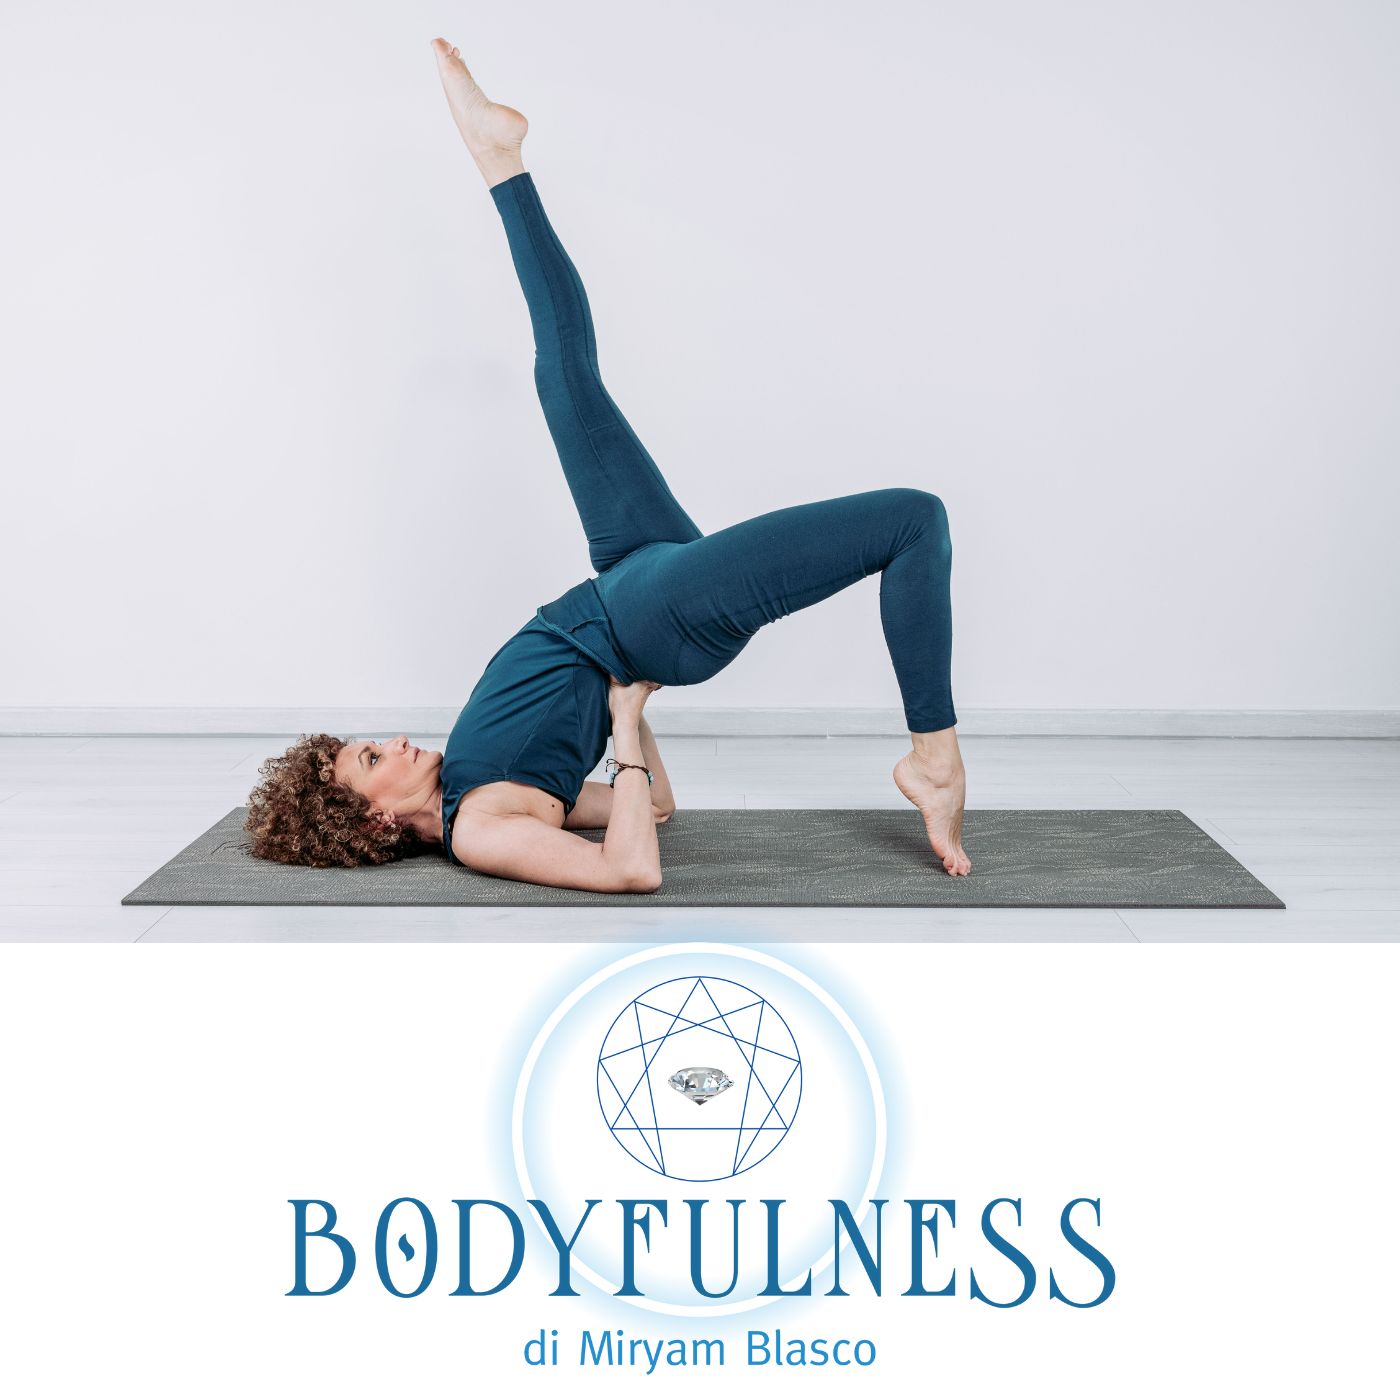 Bodyfulness: Allenamento Corporeo, Basato sull’Aumento dell’Attenzione, per il Riequilibrio e L’Armonia Psicofisica